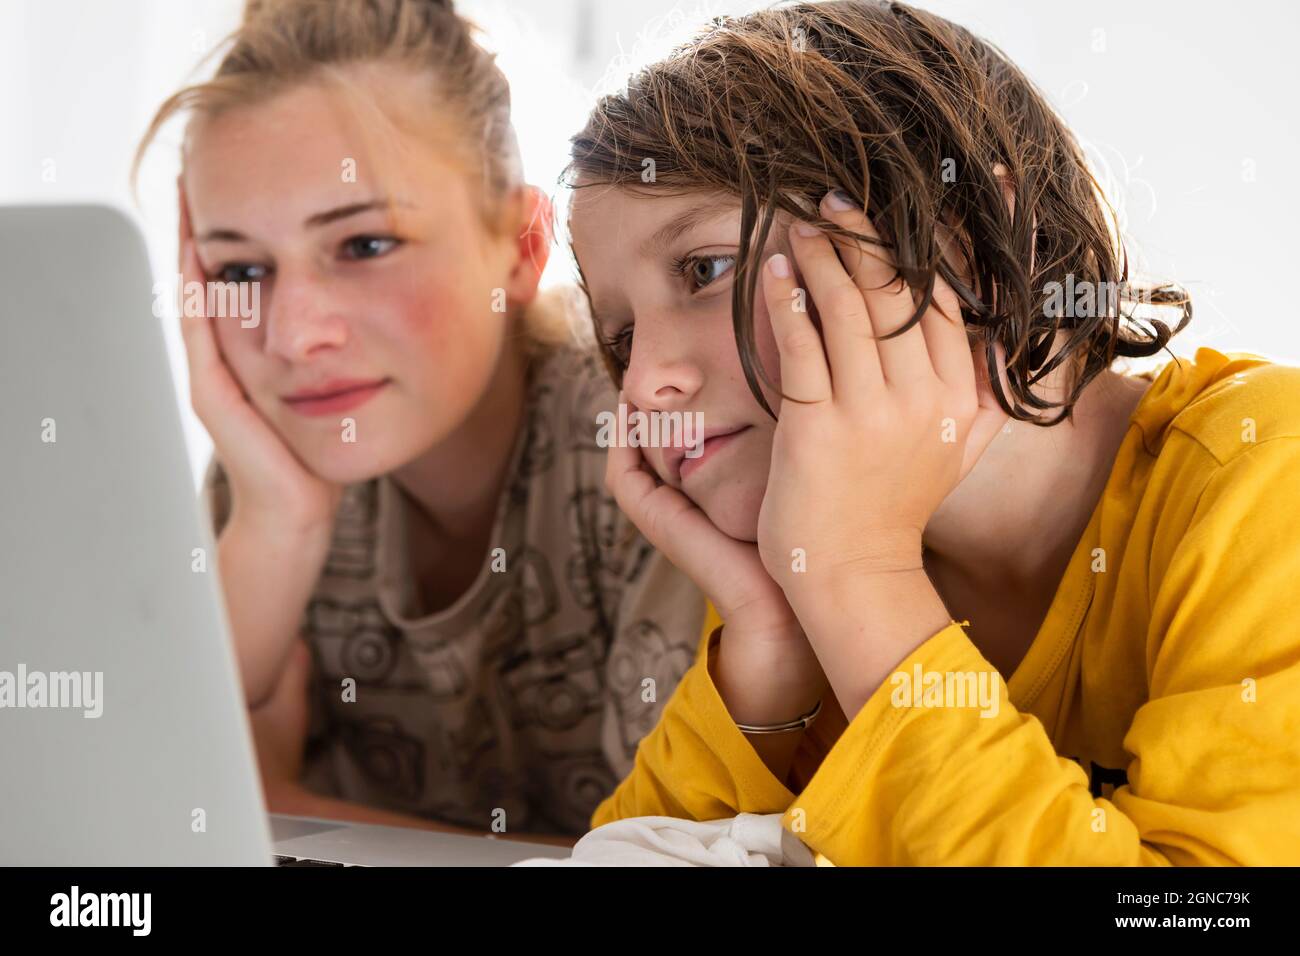 Kleiner Junge und Schwester im Teenageralter, die sich einen Laptop teilen und in einem Schlafzimmer zusehen Stockfoto